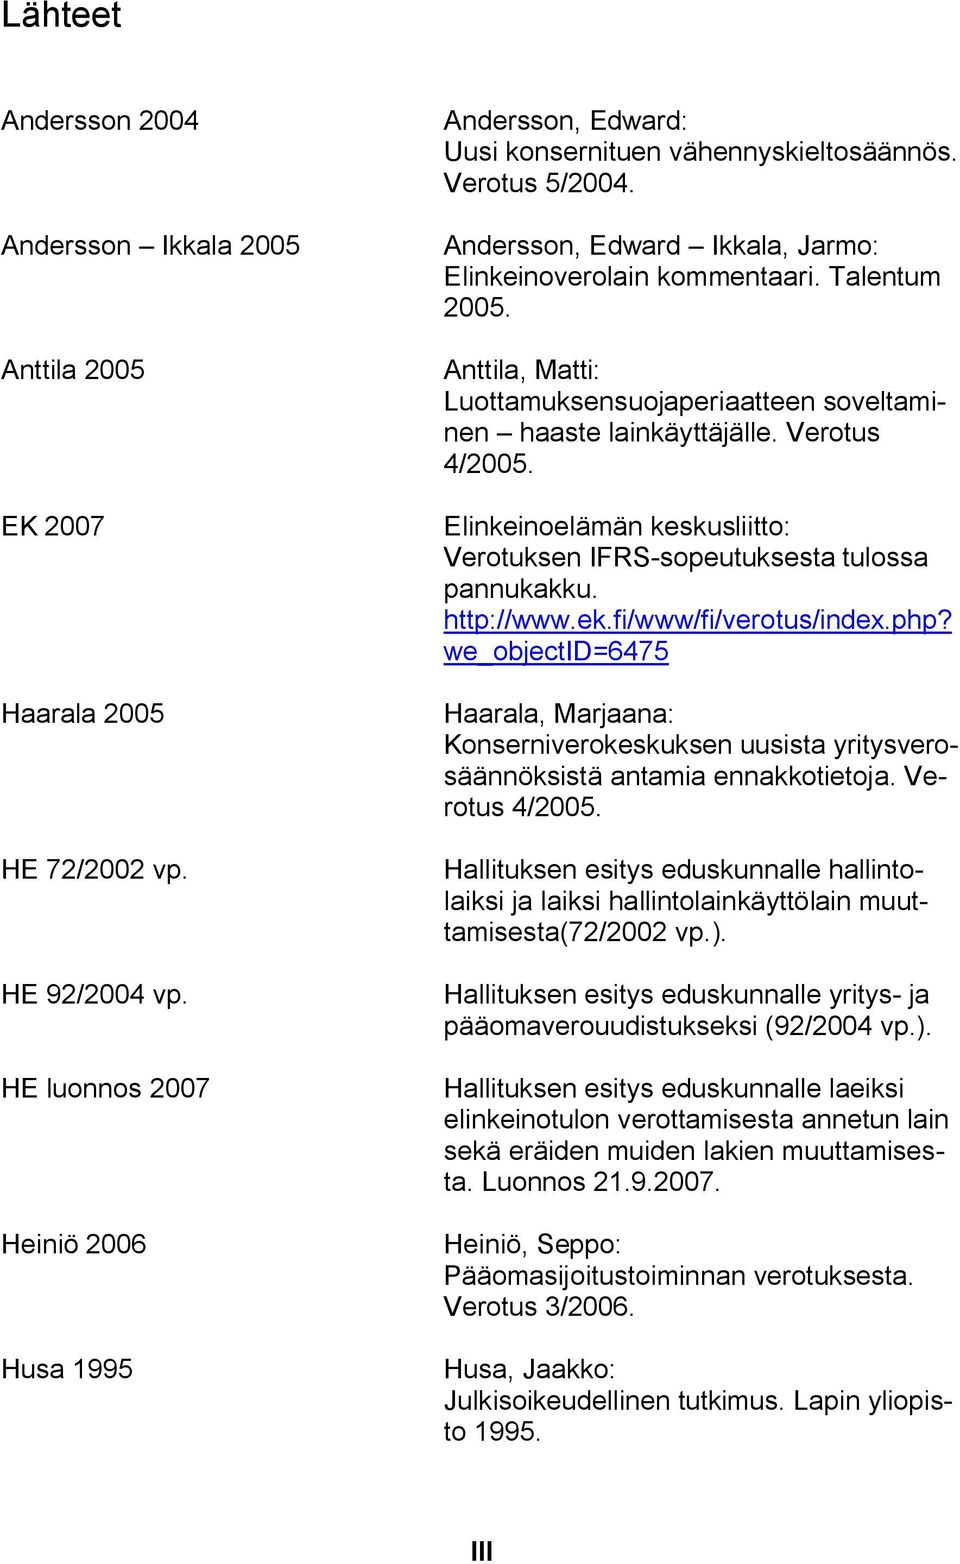 Anttila, Matti: Luottamuksensuojaperiaatteen soveltaminen haaste lainkäyttäjälle. Verotus 4/2005. Elinkeinoelämän keskusliitto: Verotuksen IFRS sopeutuksesta tulossa pannukakku. http://www.ek.